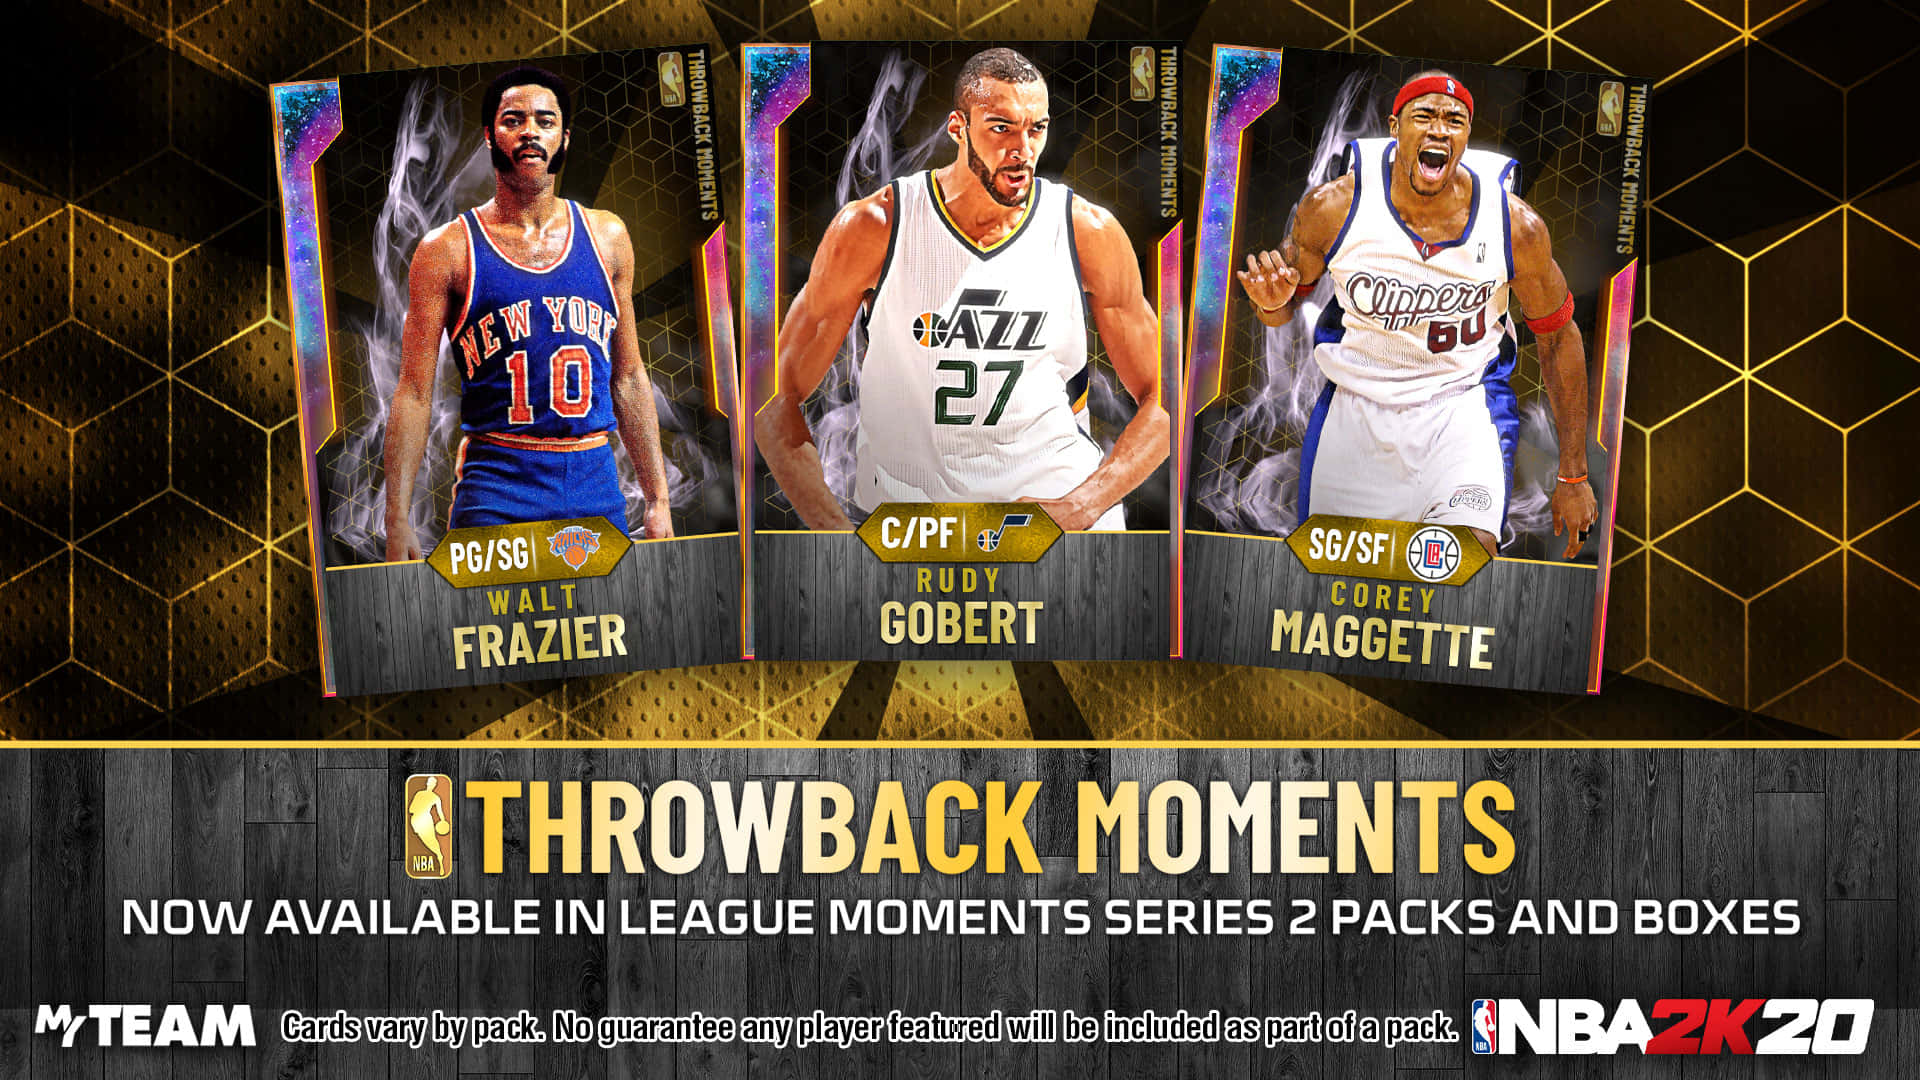 Walt Frazier Throwback Moments NBA 2K20 Wallpaper